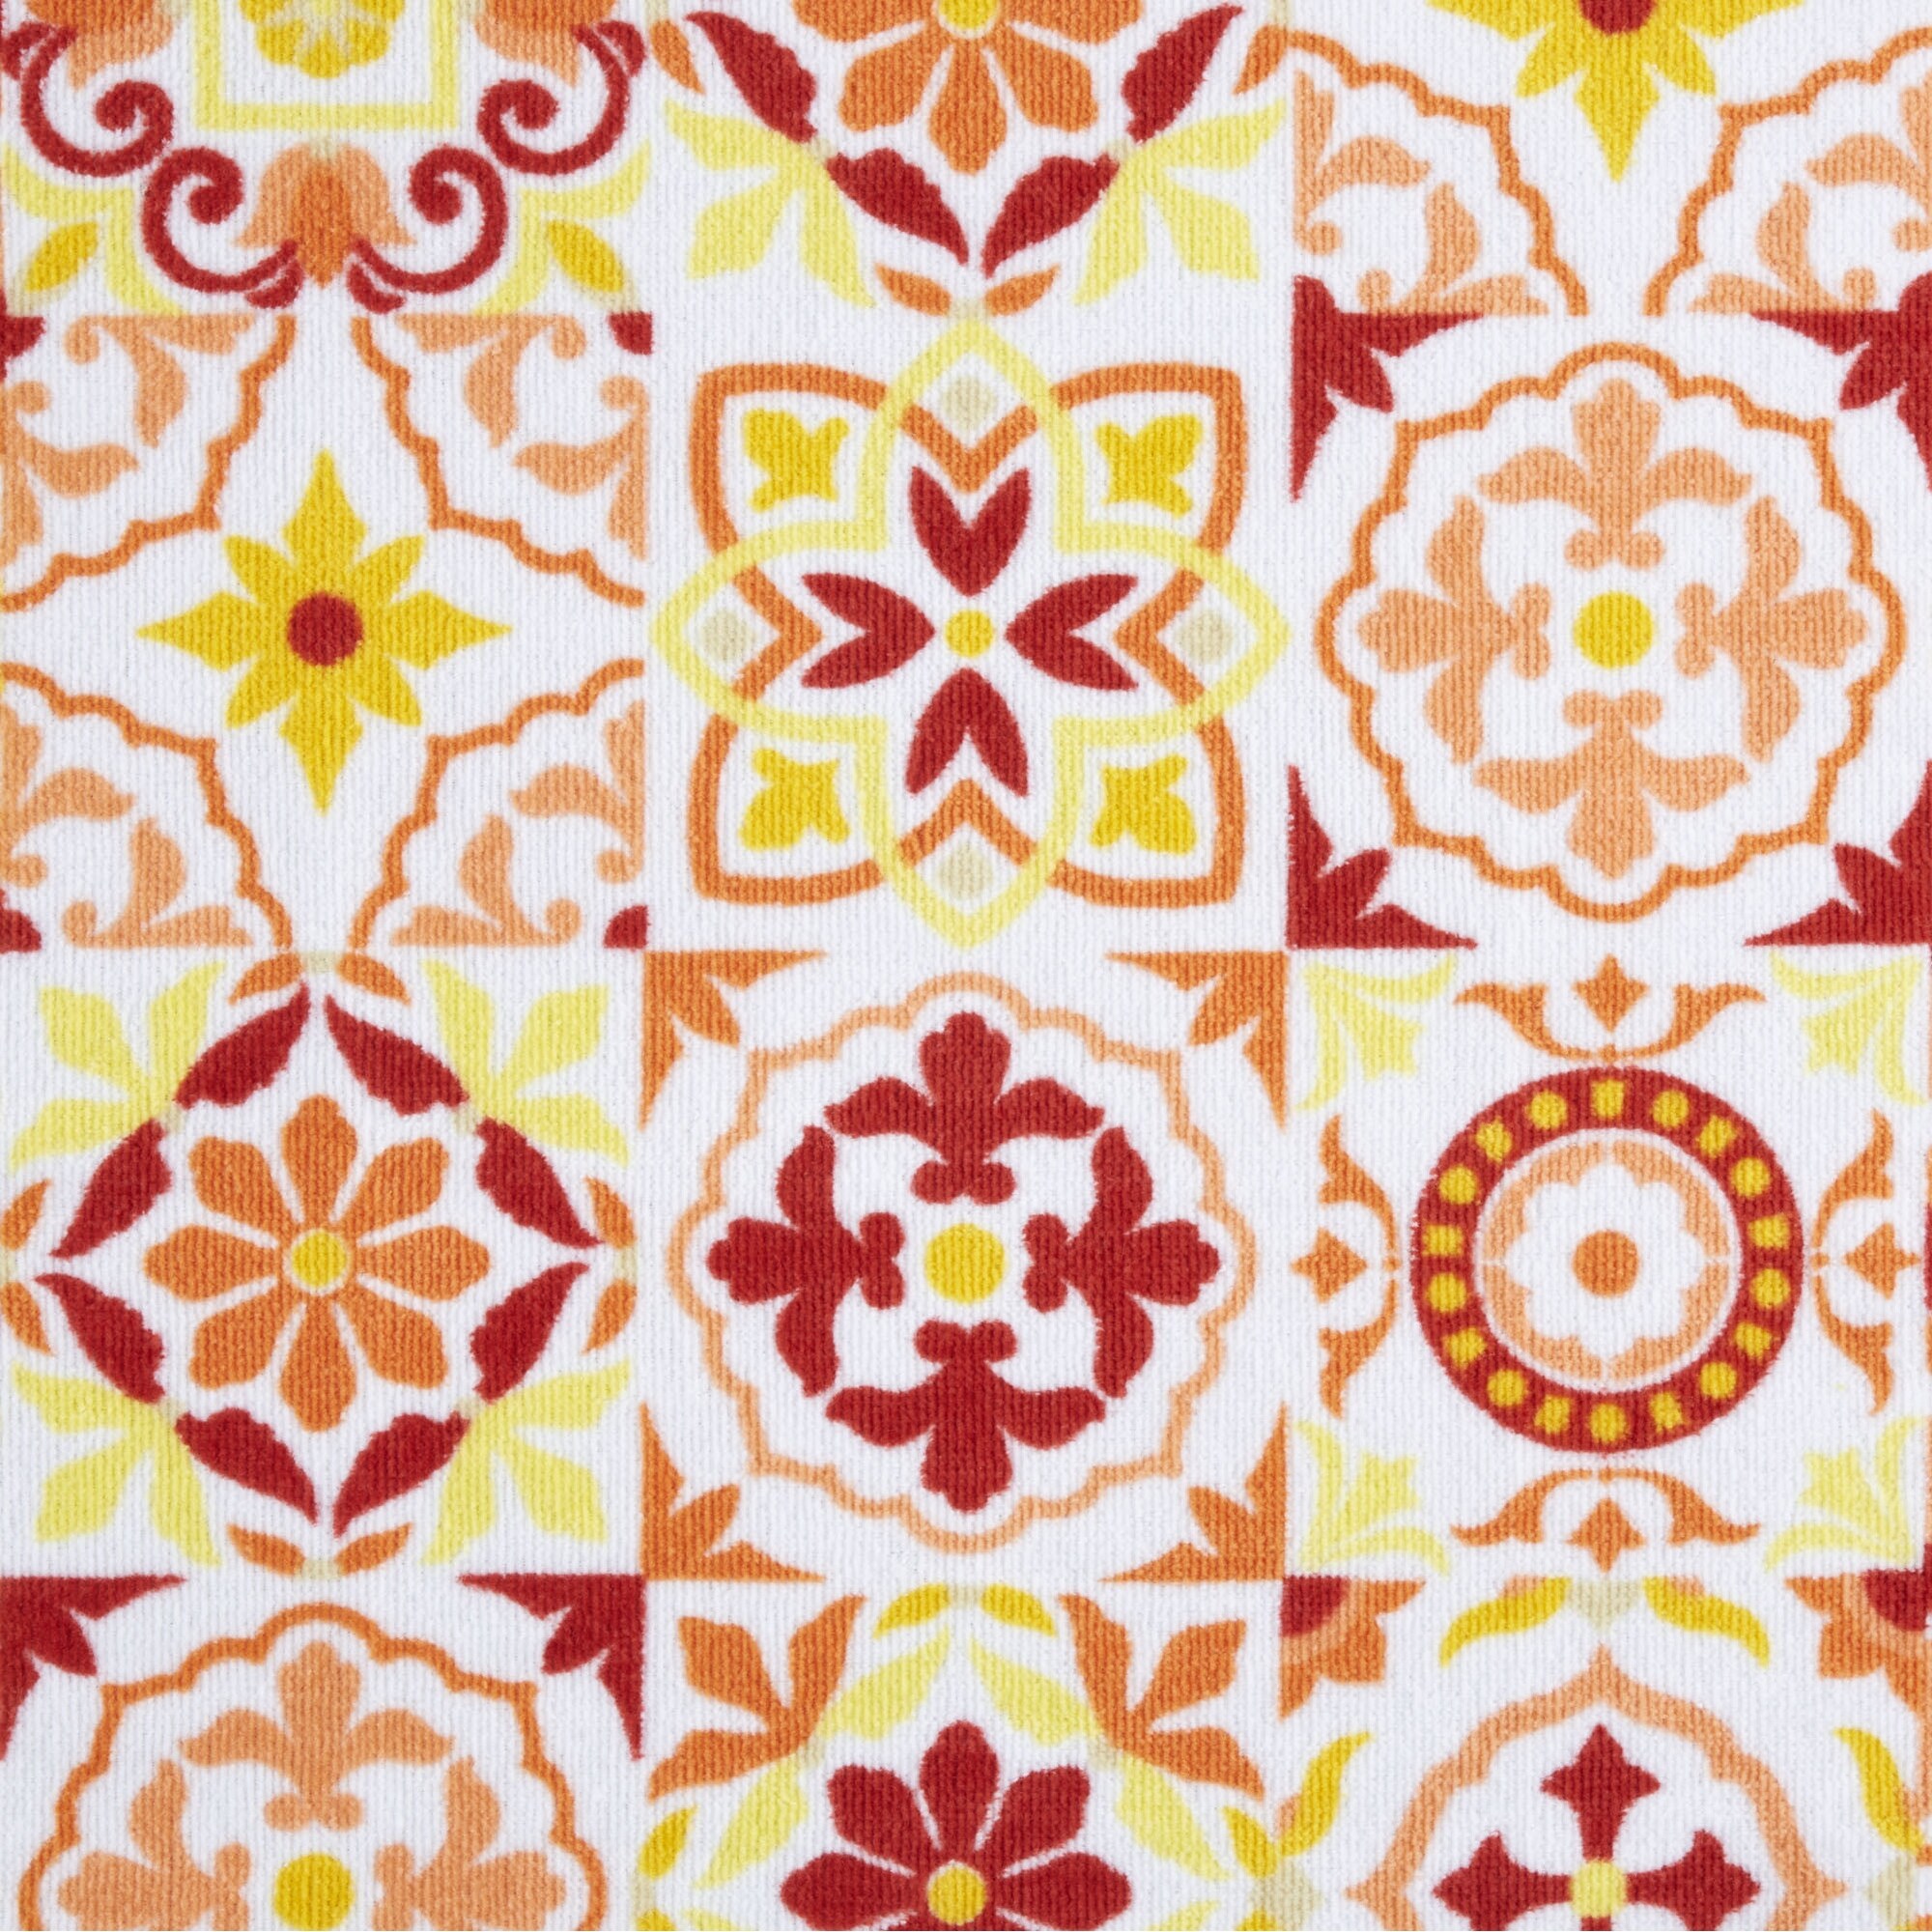 Fiesta Worn Tiles Kitchen Towel 2-Pack Set, Orange, Cotton